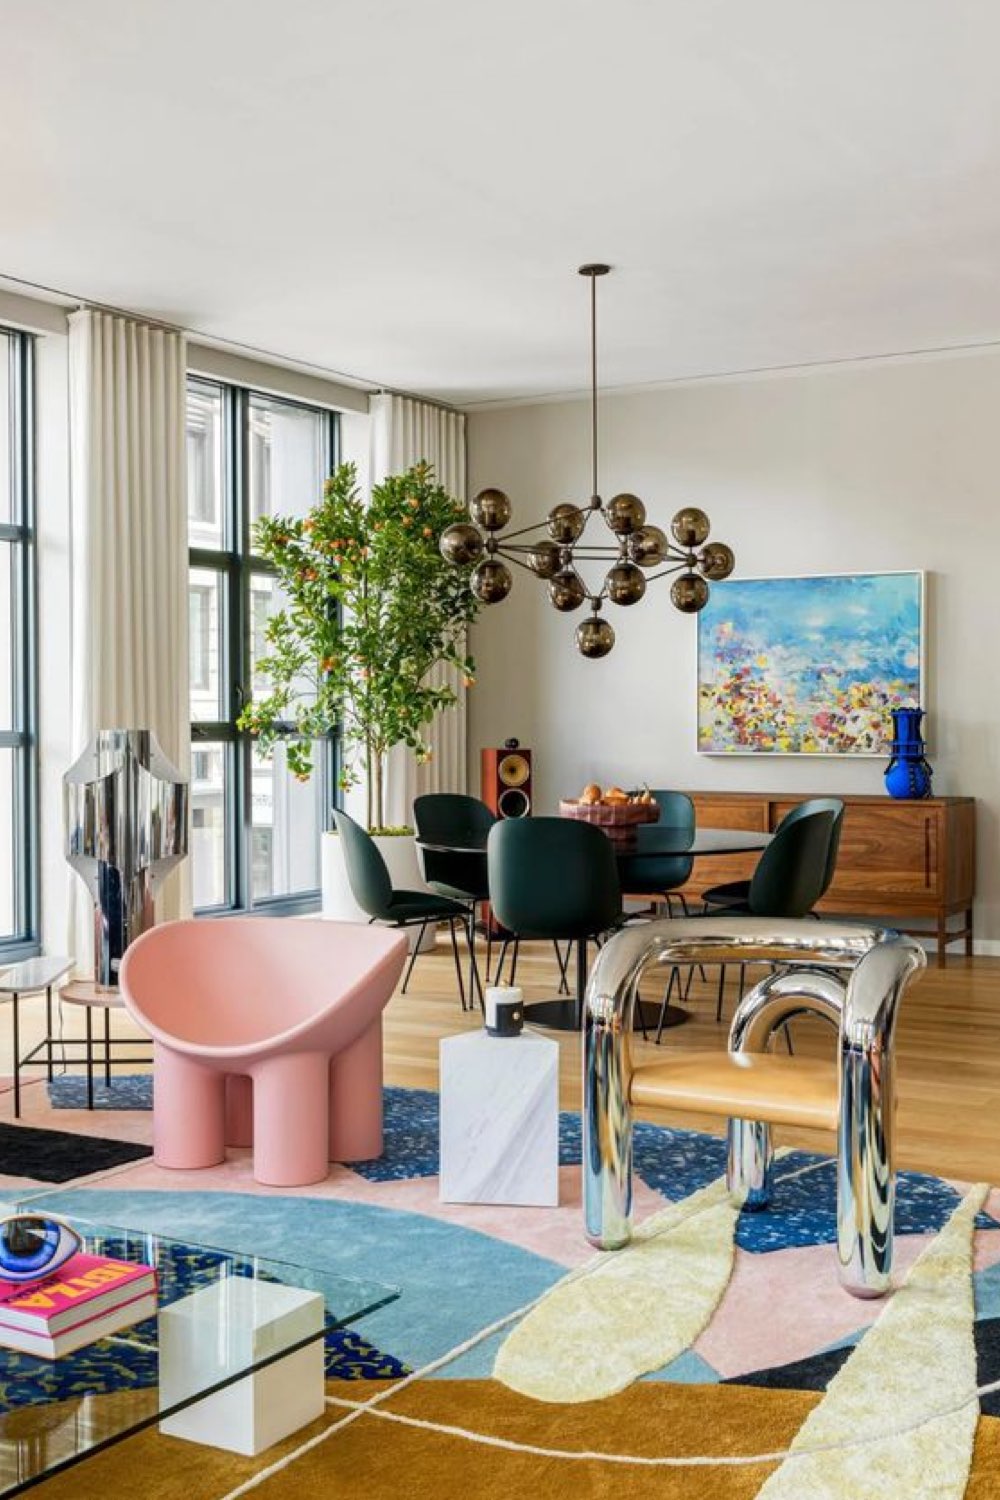 caracteristique decoration modern design appartement chic et élégant salon salle à manger mobilier vintage coloré grande suspension rétro